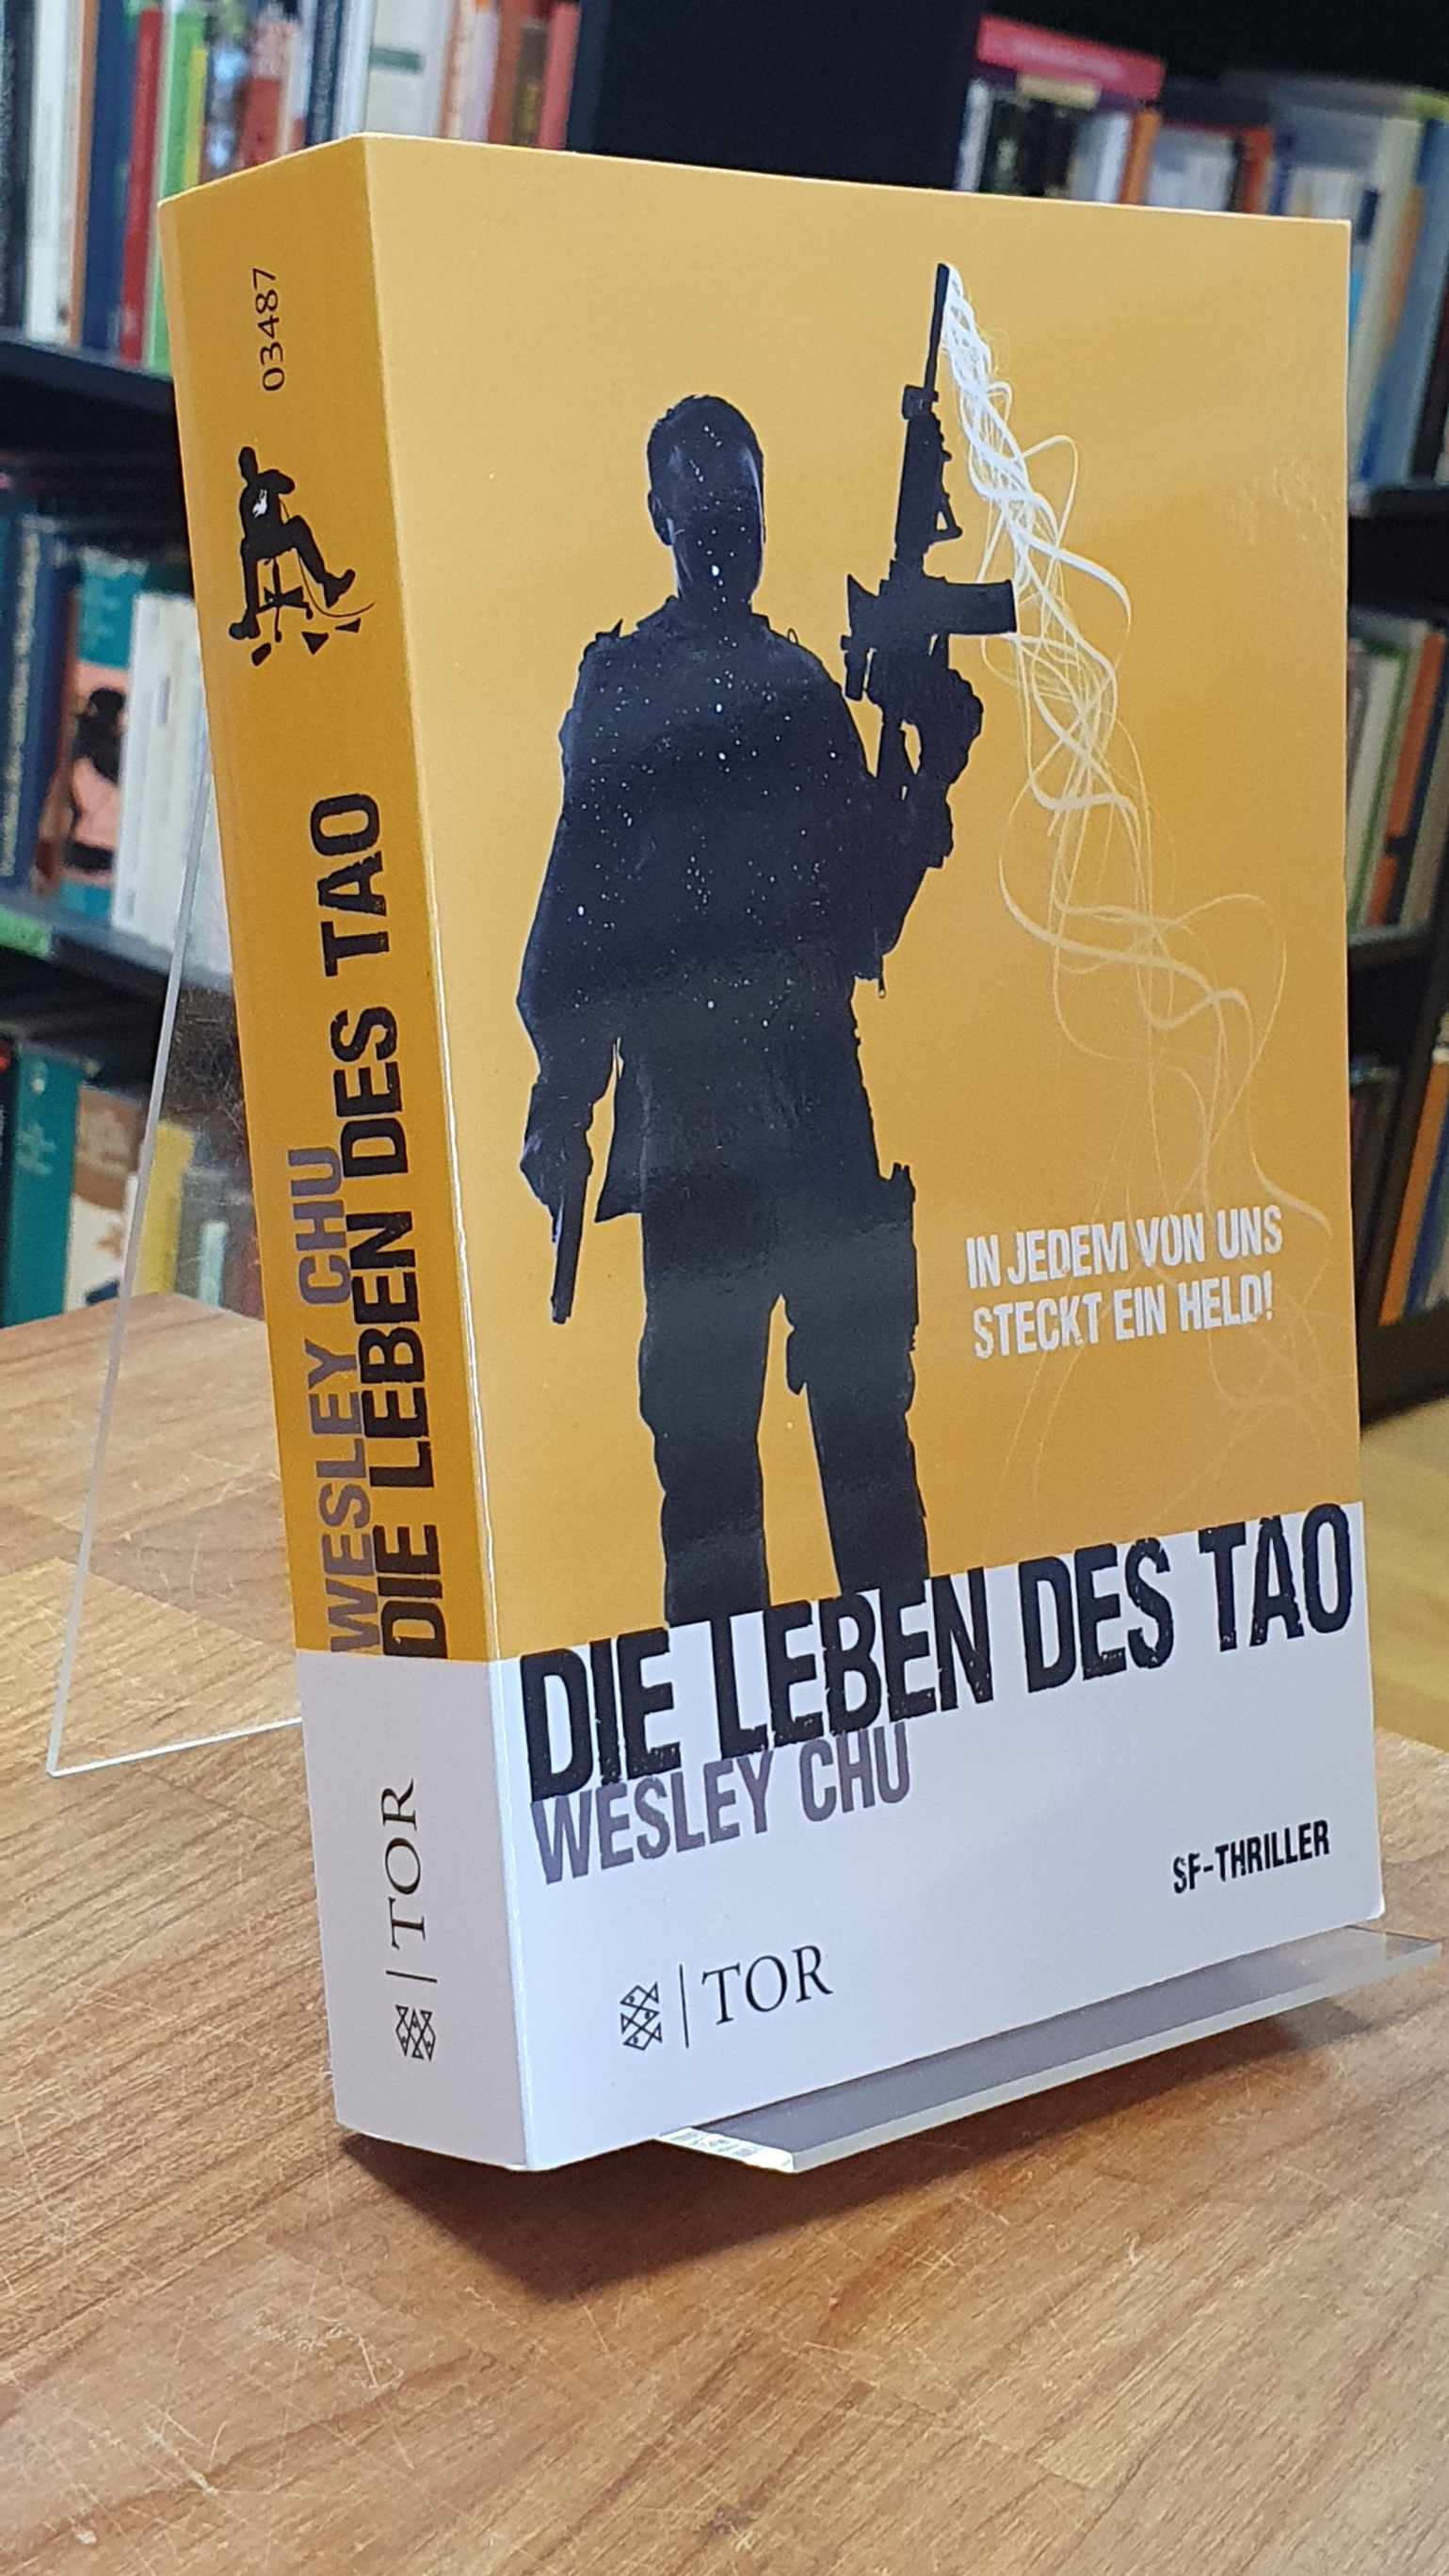 Chu, Die Leben des Tao – SF-Thriller,